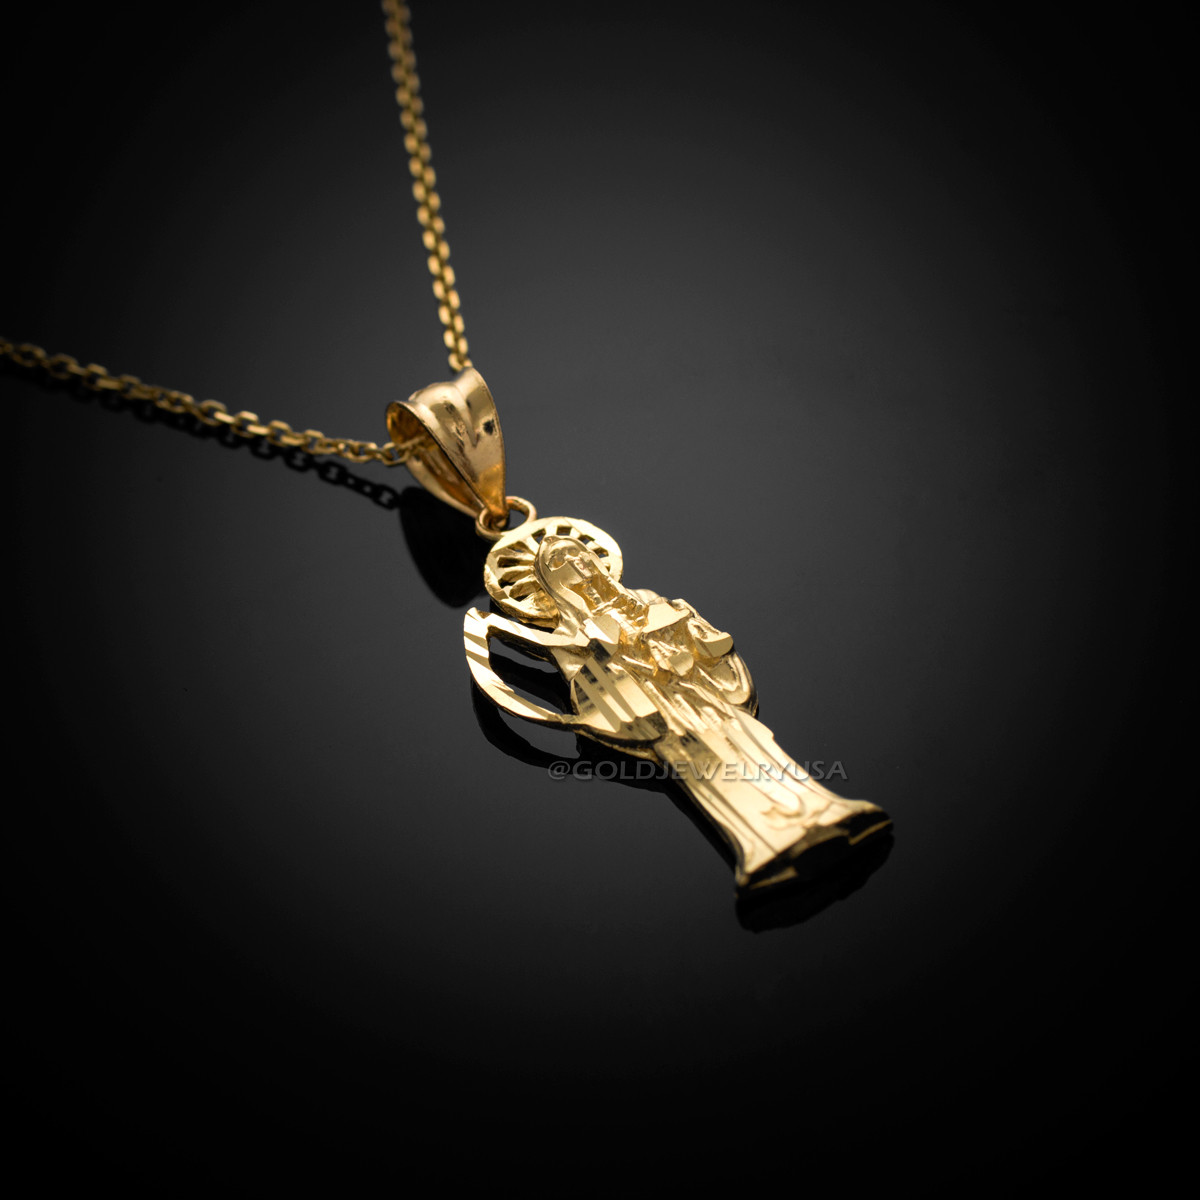 Gold Santa Muerte Pendant Necklace